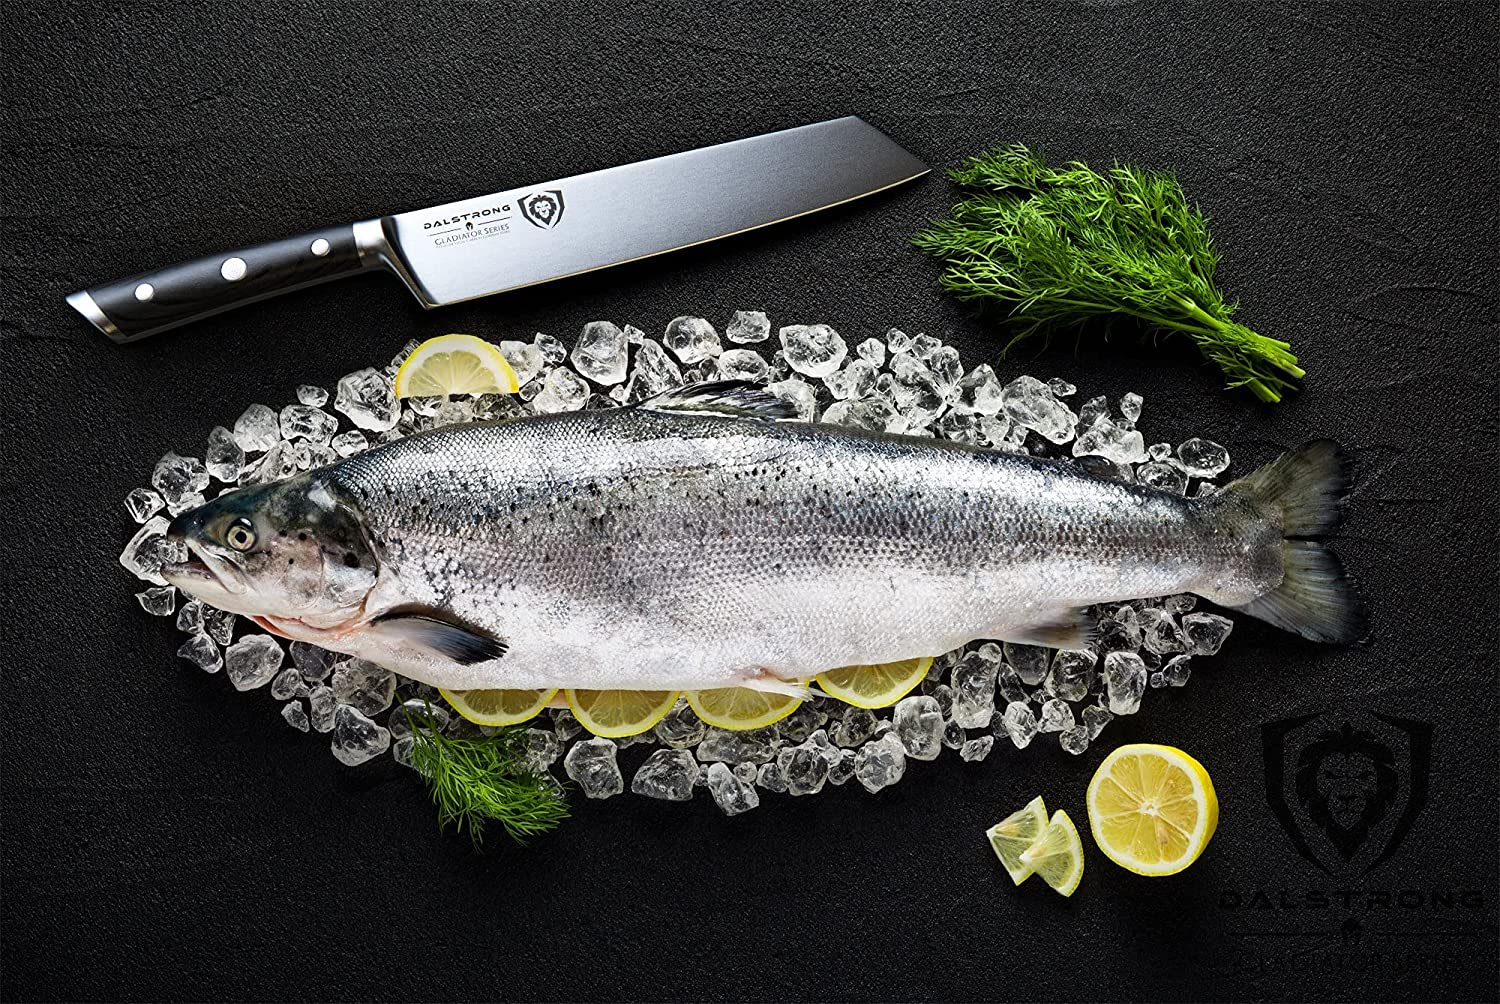 Mejor cuchillo kiritsuke para zurdos - DALSTRONG Chef Knife cortando pescado